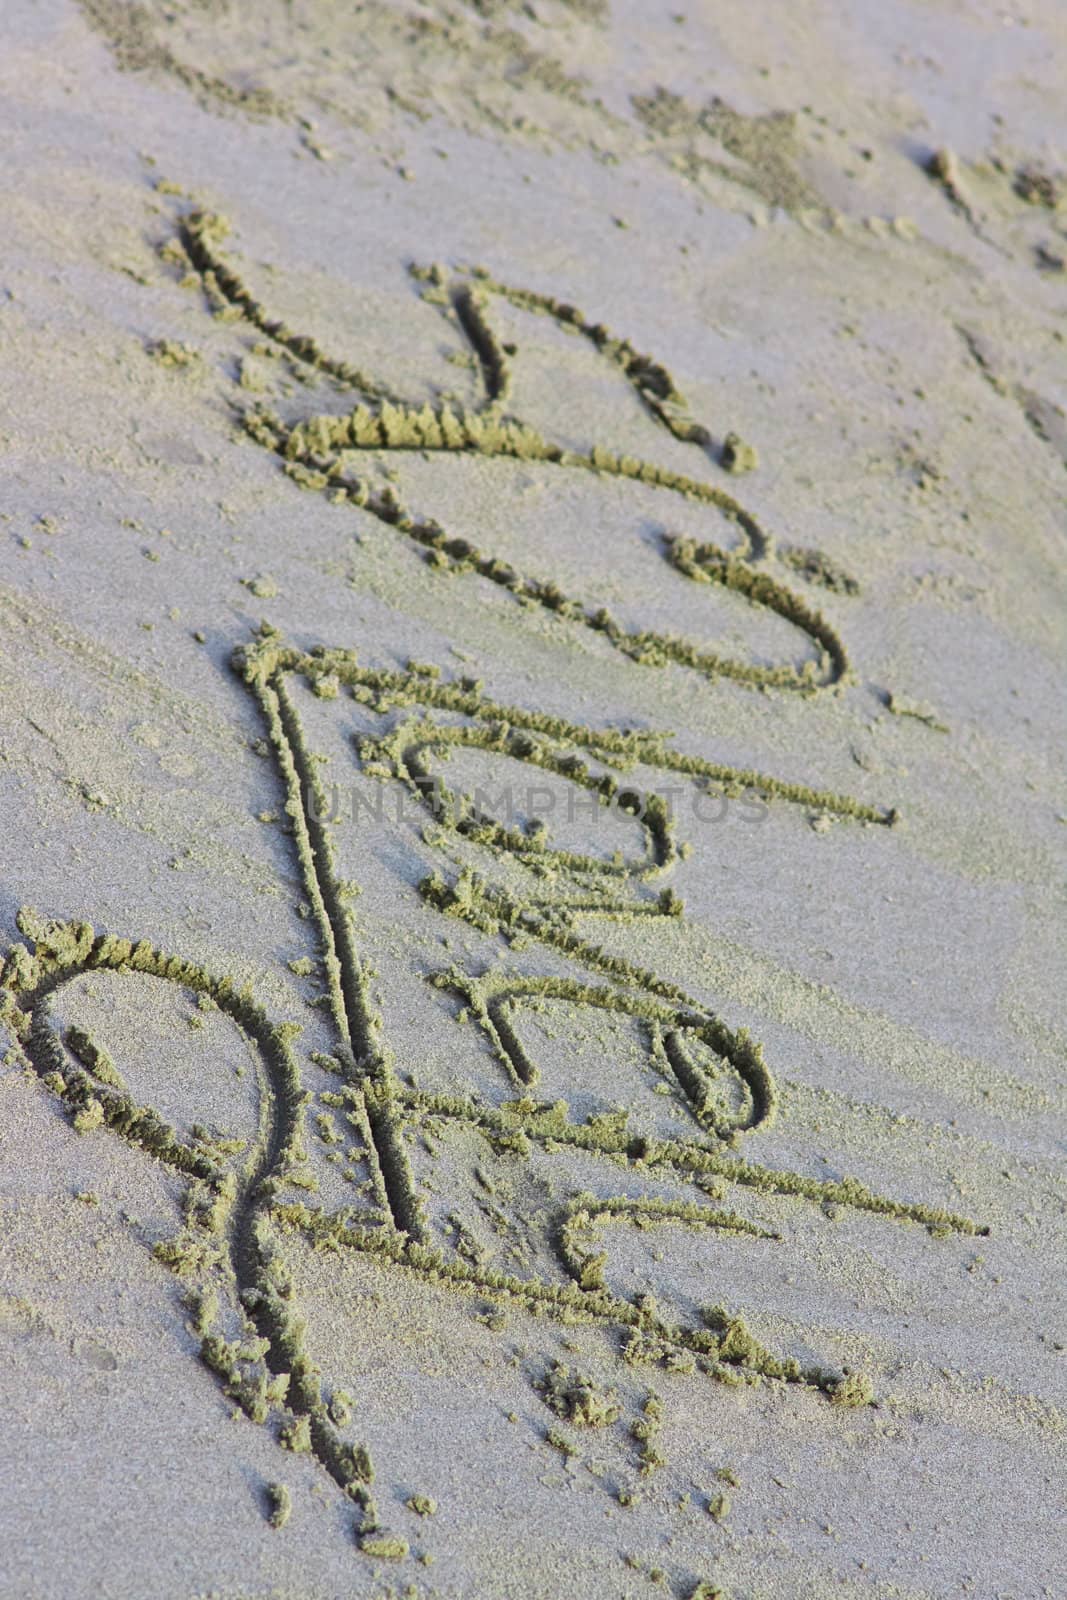 The inscription on the sand